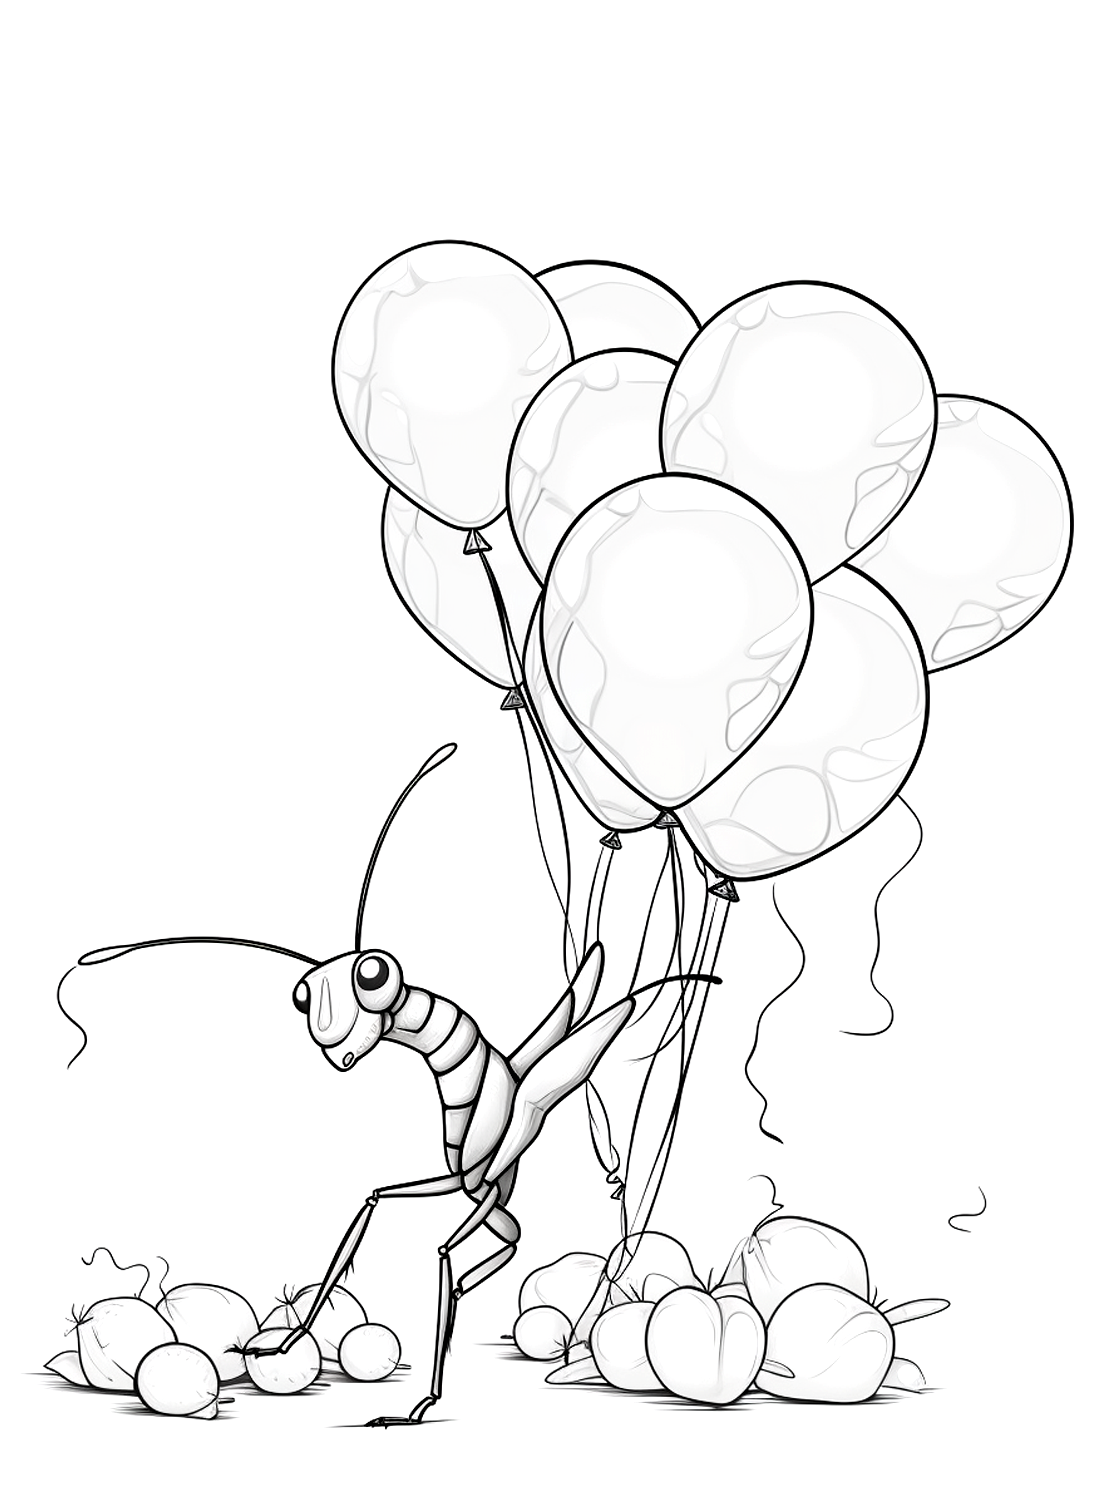 Bidsprinkhaan neemt veel ballonnen van bidsprinkhaan